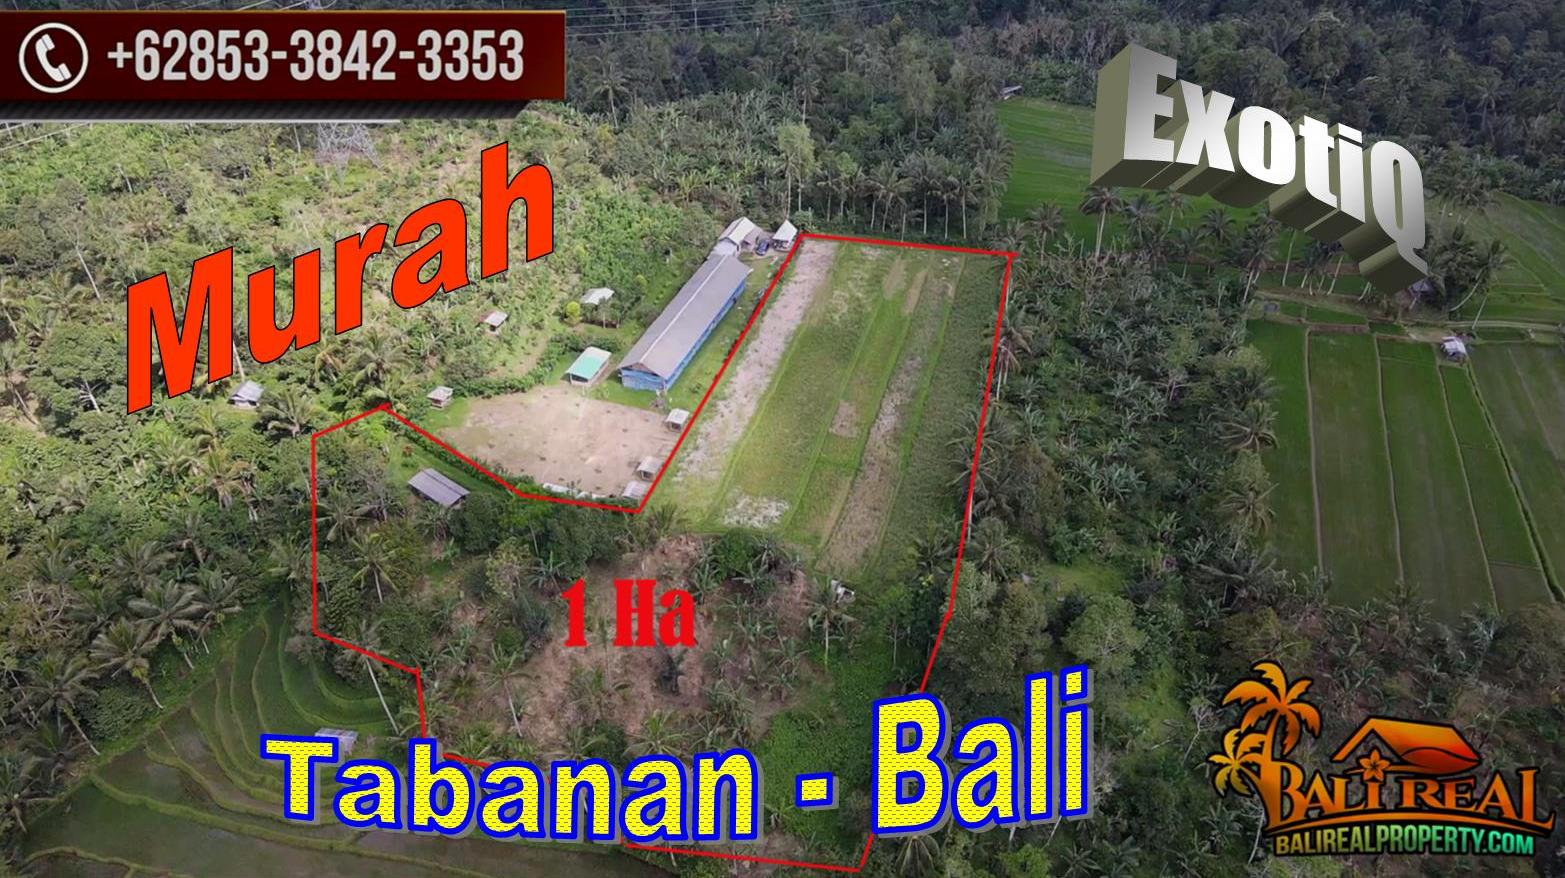 JUAL MURAH TANAH di TABANAN 10,000 m2 View Sawah, Kebun dan Gunung